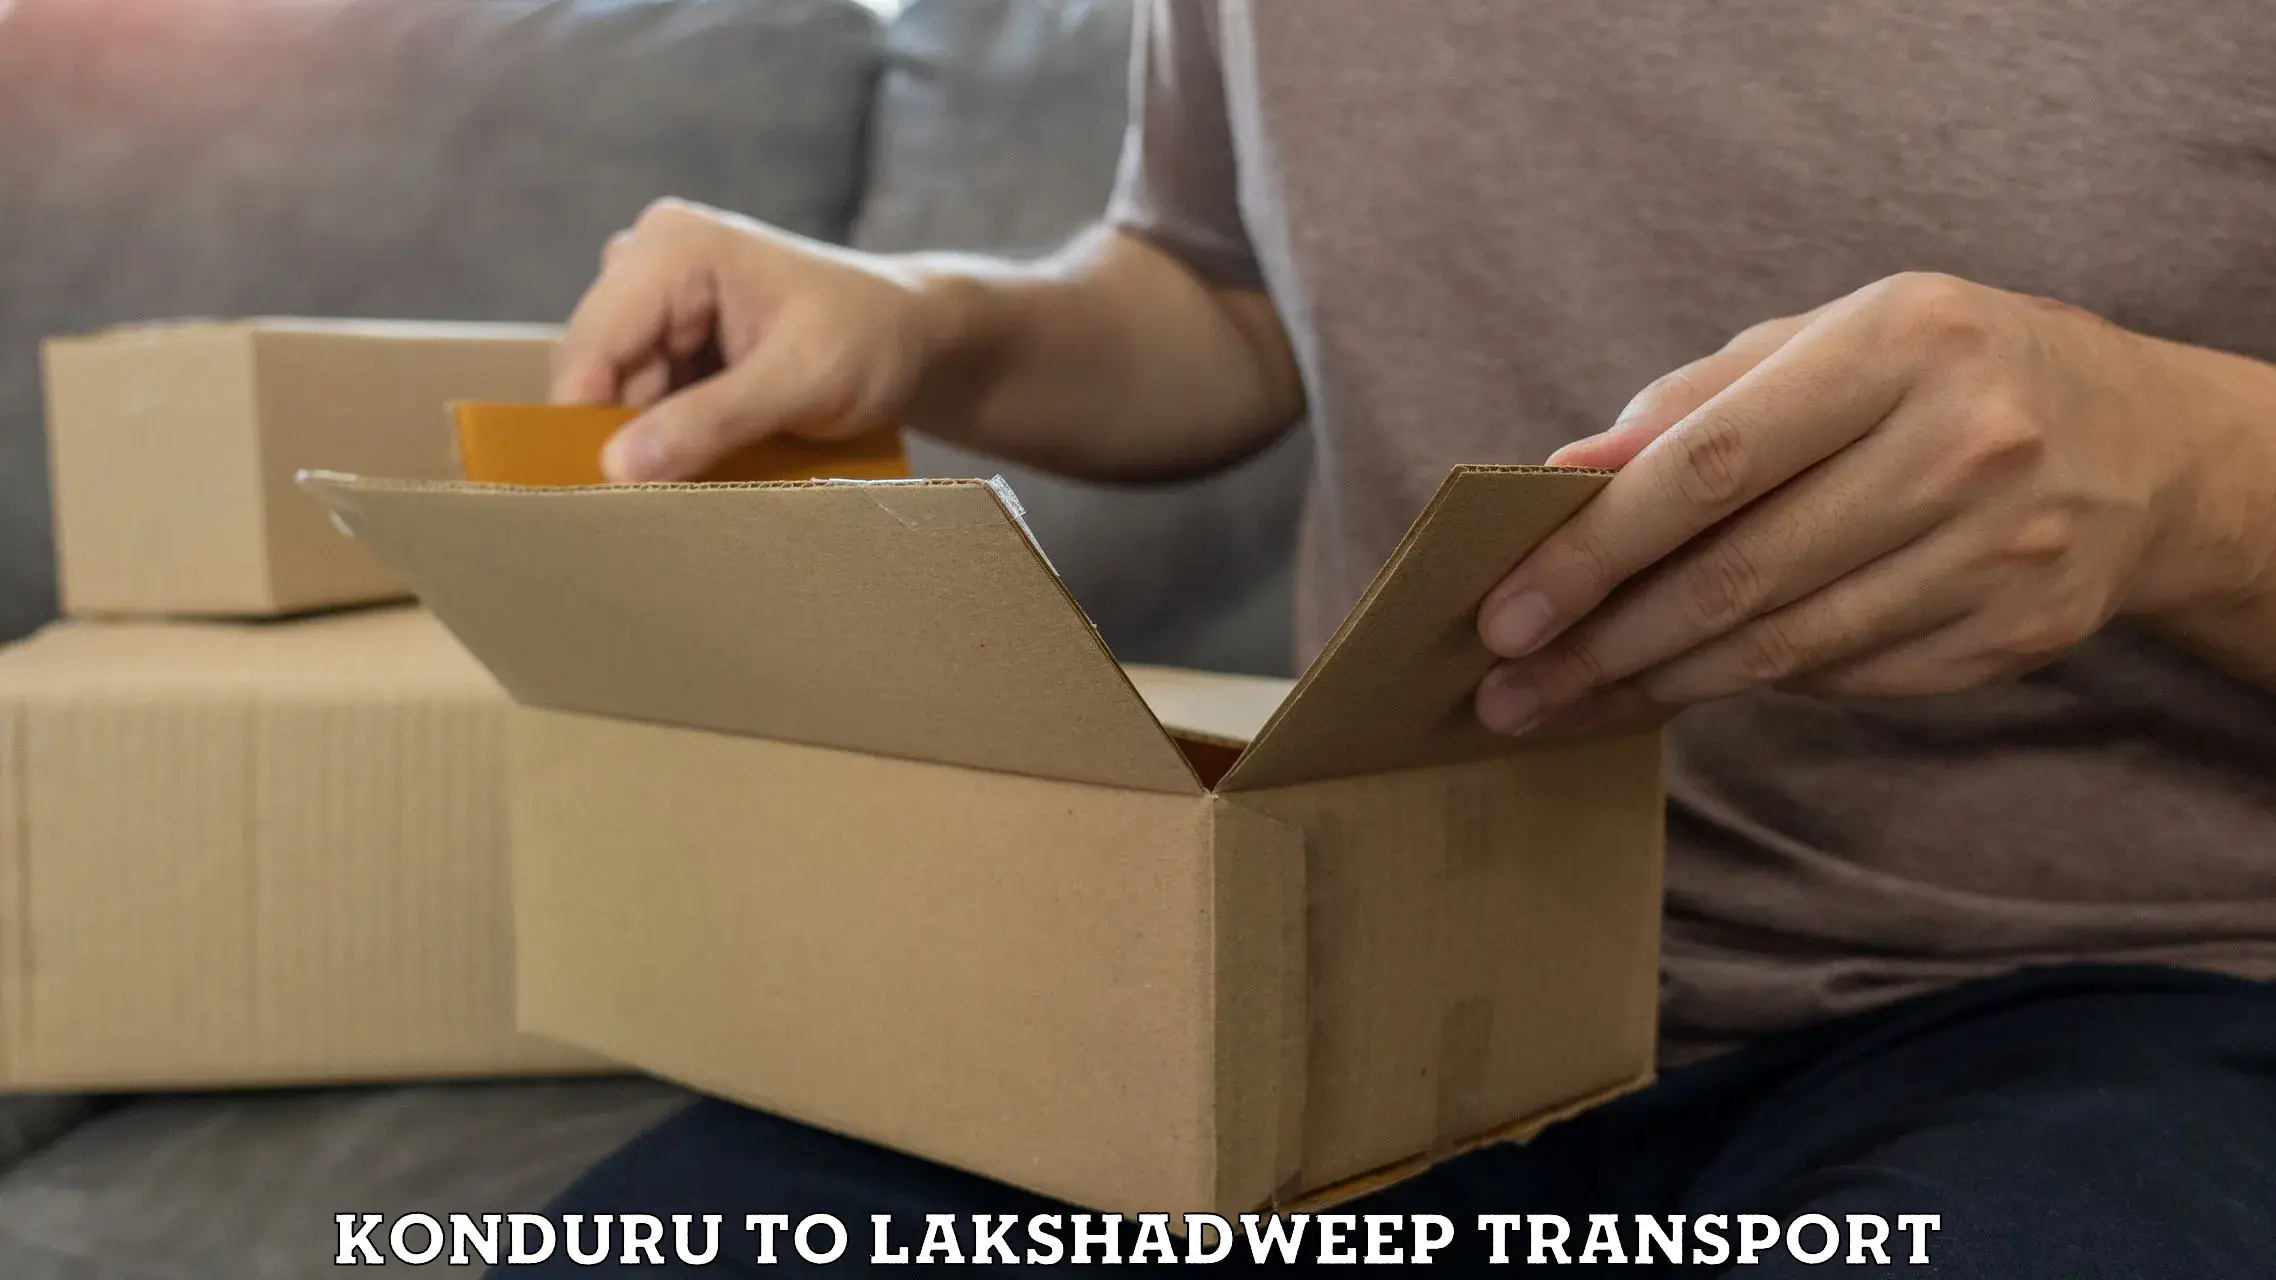 Two wheeler parcel service Konduru to Lakshadweep